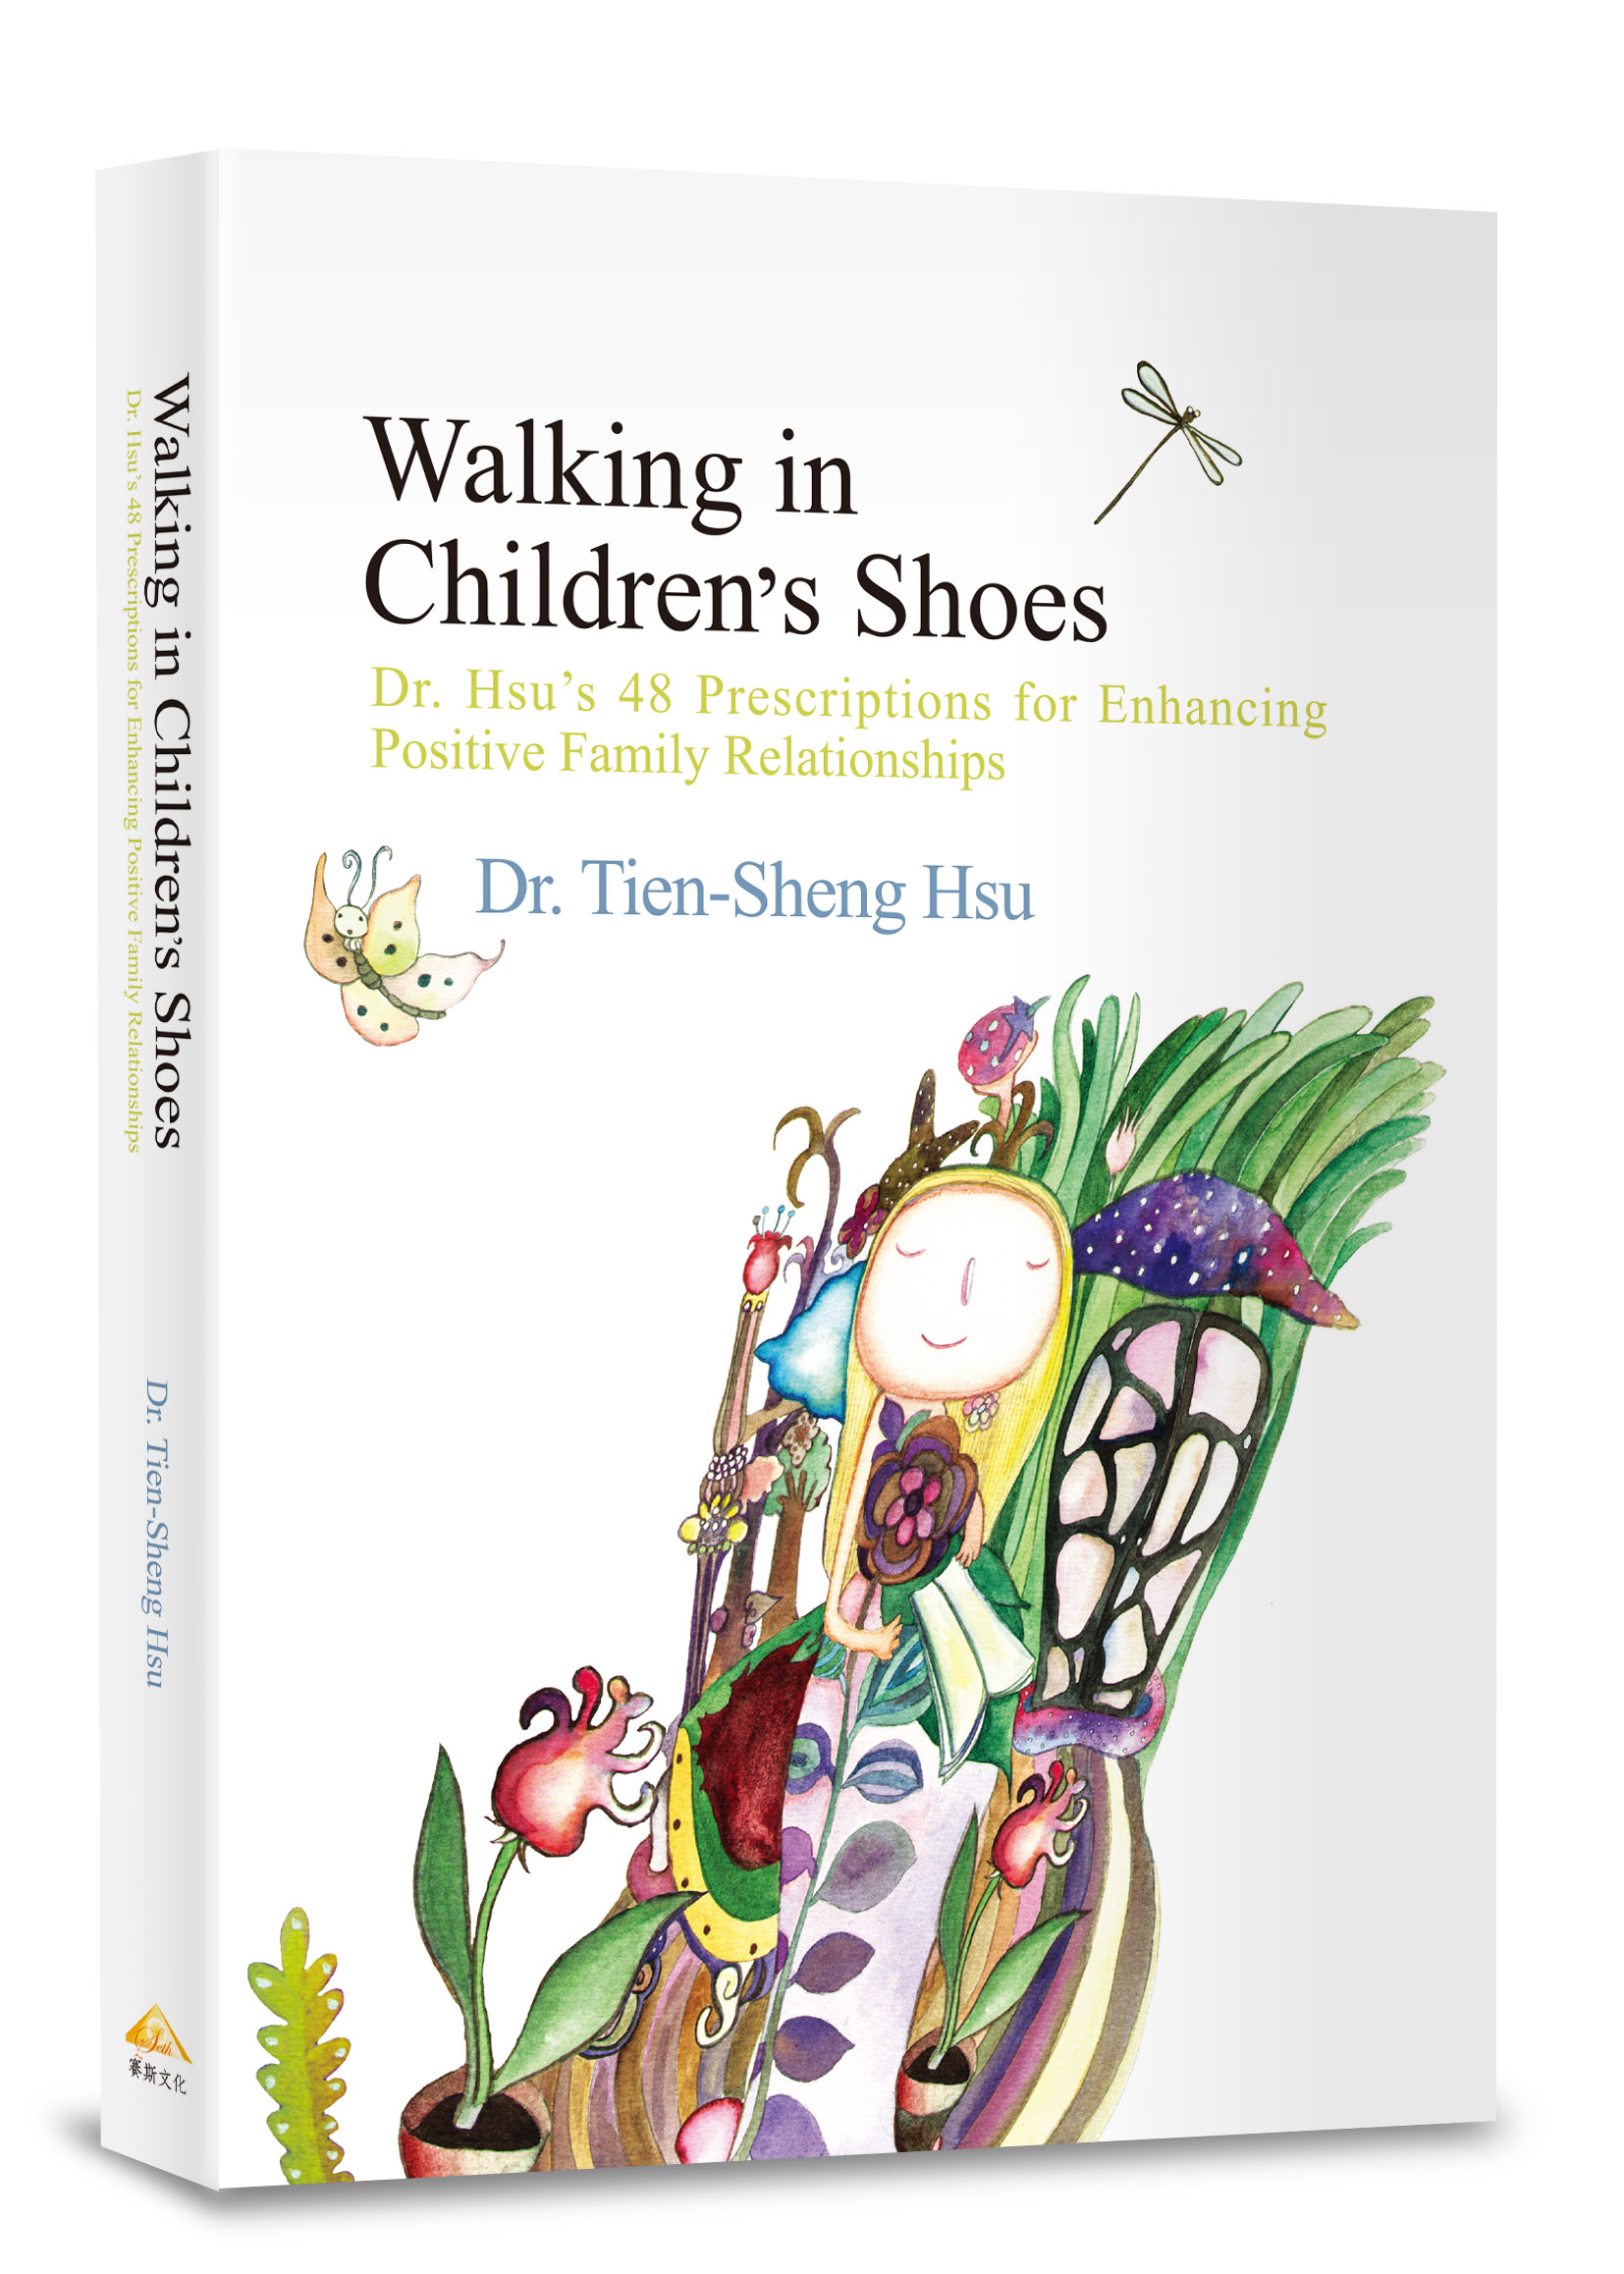 Walking in Children’s Shoes（在孩子心靈飛翔英文版）